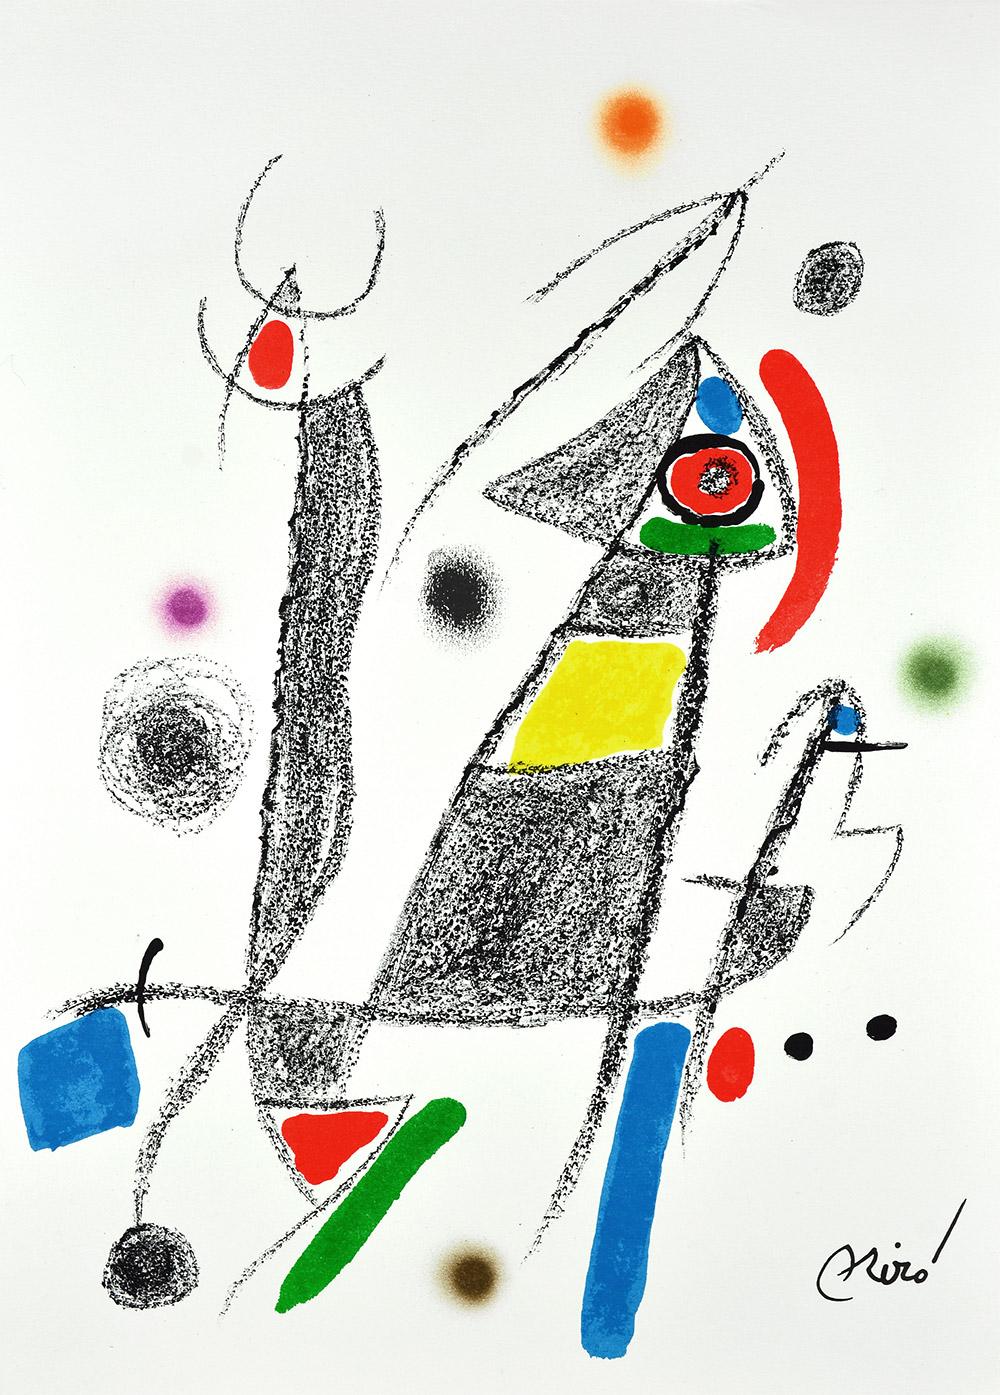 JOAN MIRÓ Maravillas con variaciones acrósticas en el jardín... 8 Lithographs - Abstract Print by Joan Miró